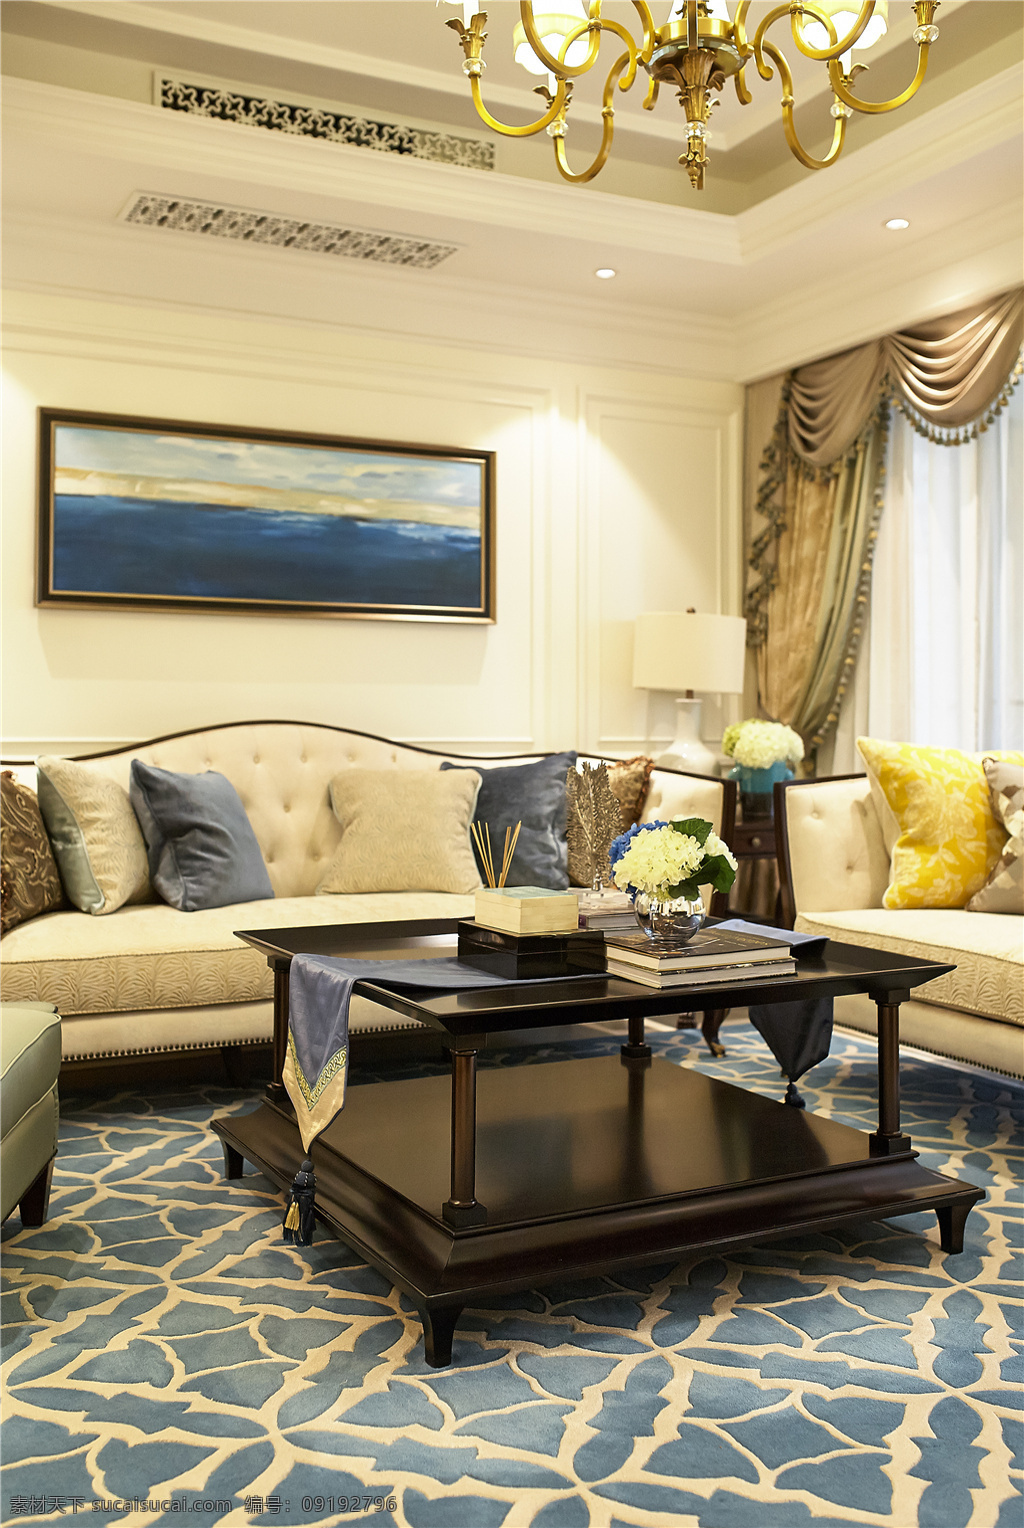 欧式 经典 客厅 茶几 装饰画 装修 效果图 时尚 奢华 大气 装饰设计 客厅高清大图